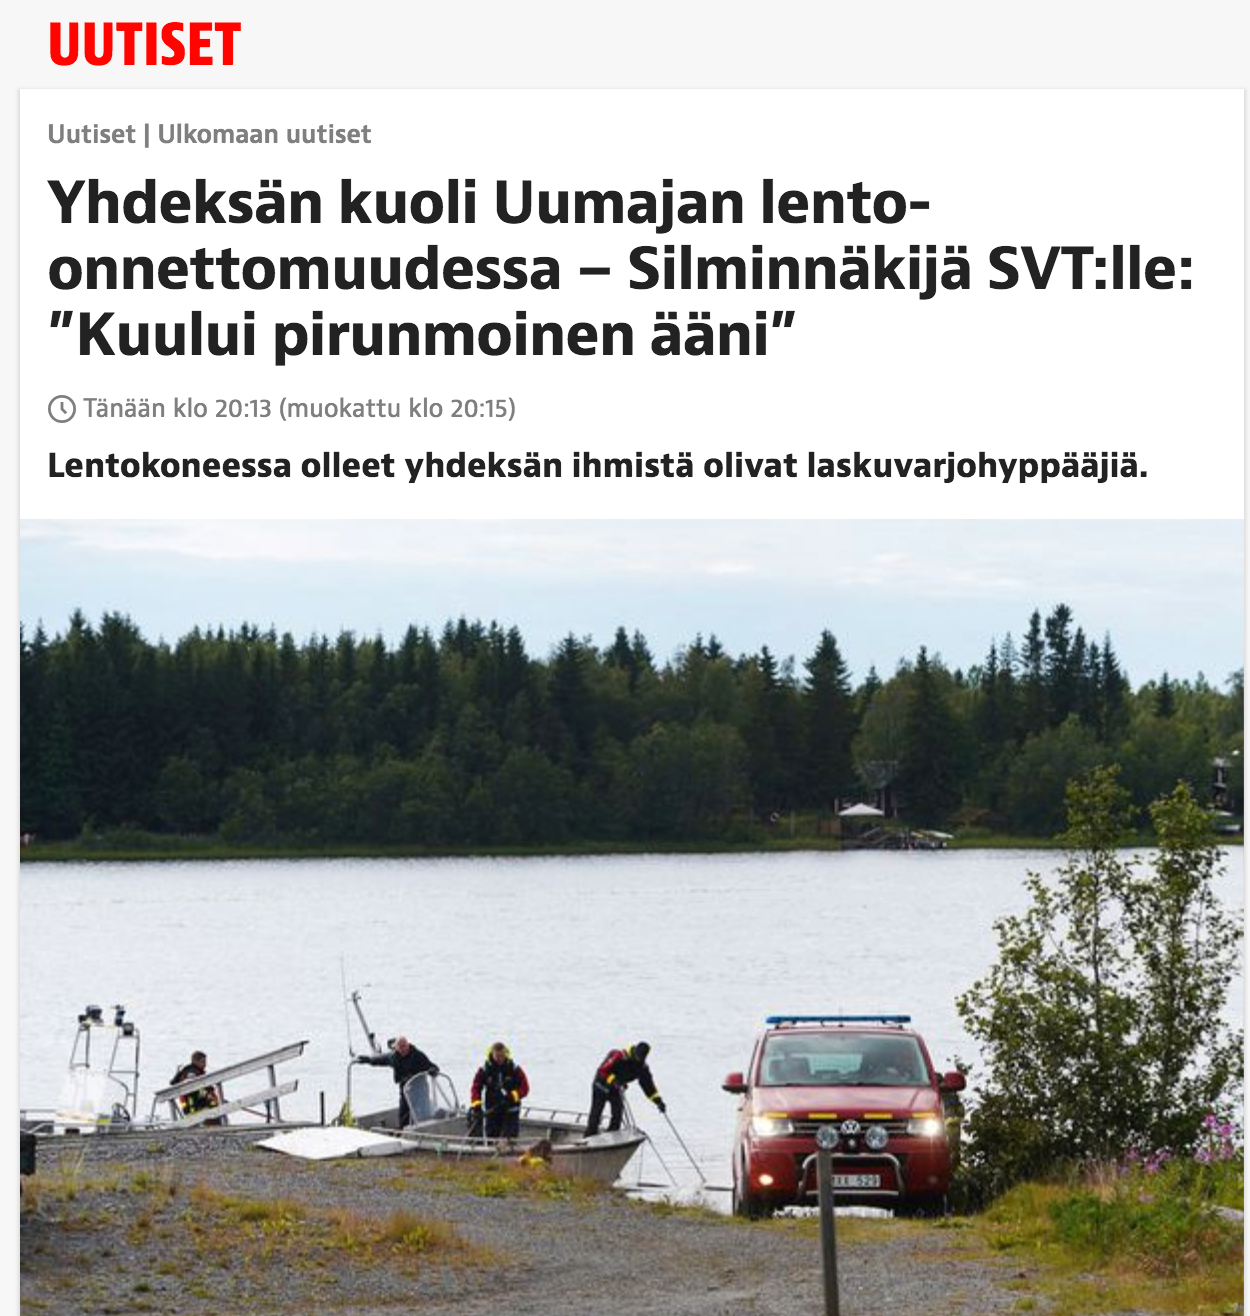 Iltalehti, Finland, citerar ett vittne som berättar för SVT att ett ”djävulskt ljud hördes”.